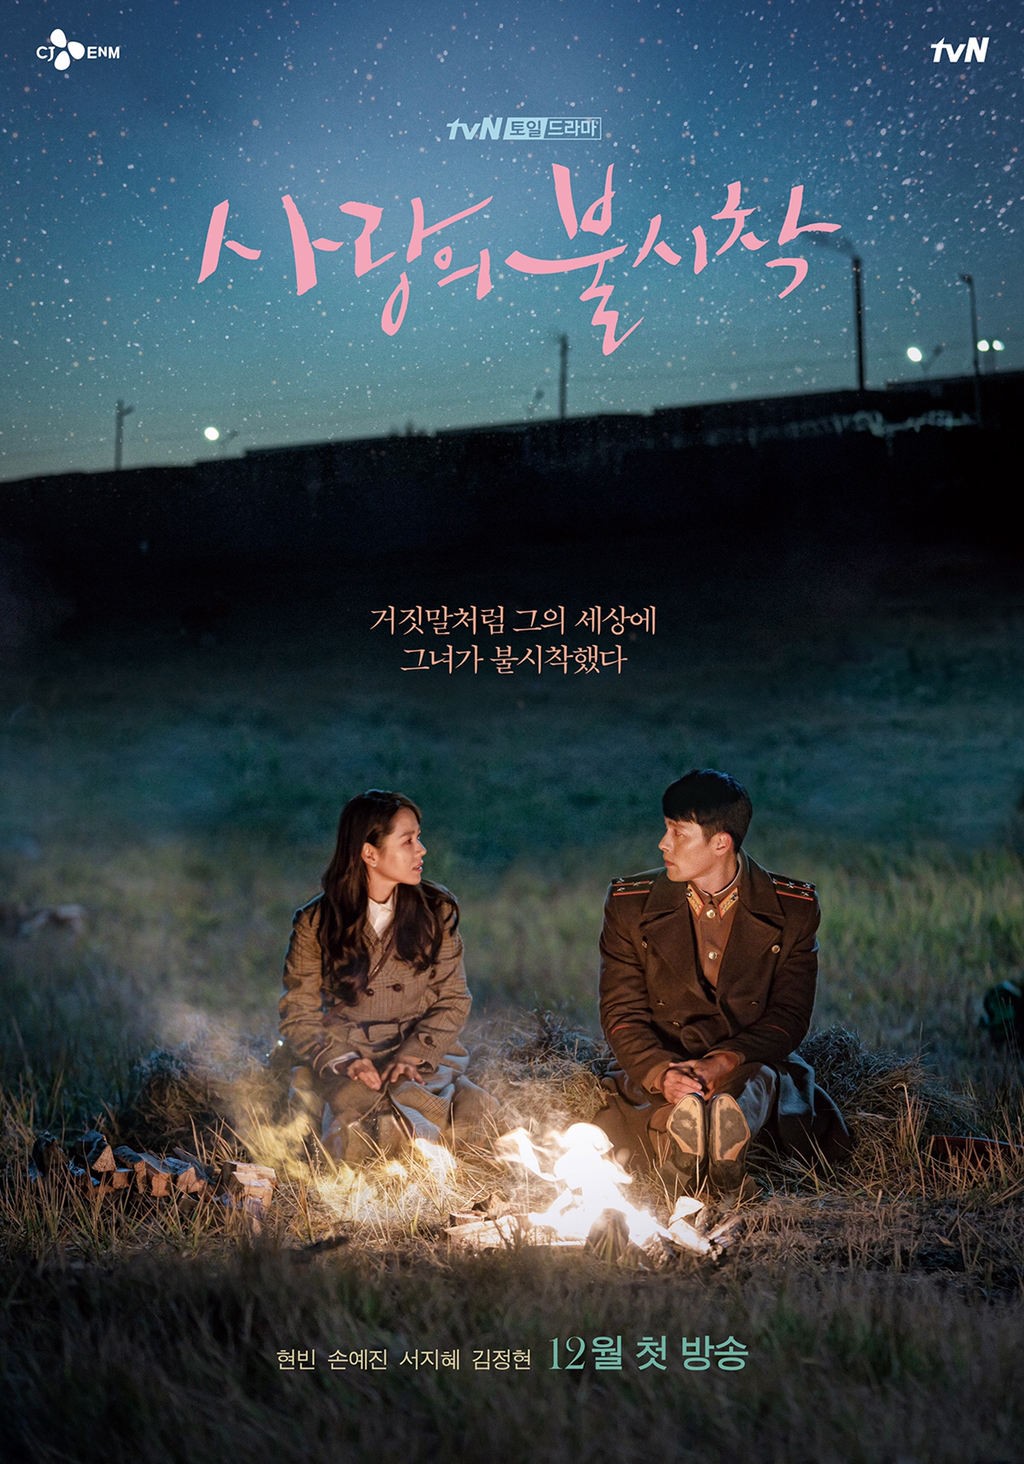 타임지가 선정한 넷플릭스에서 볼만한 한국 드라마 10작품